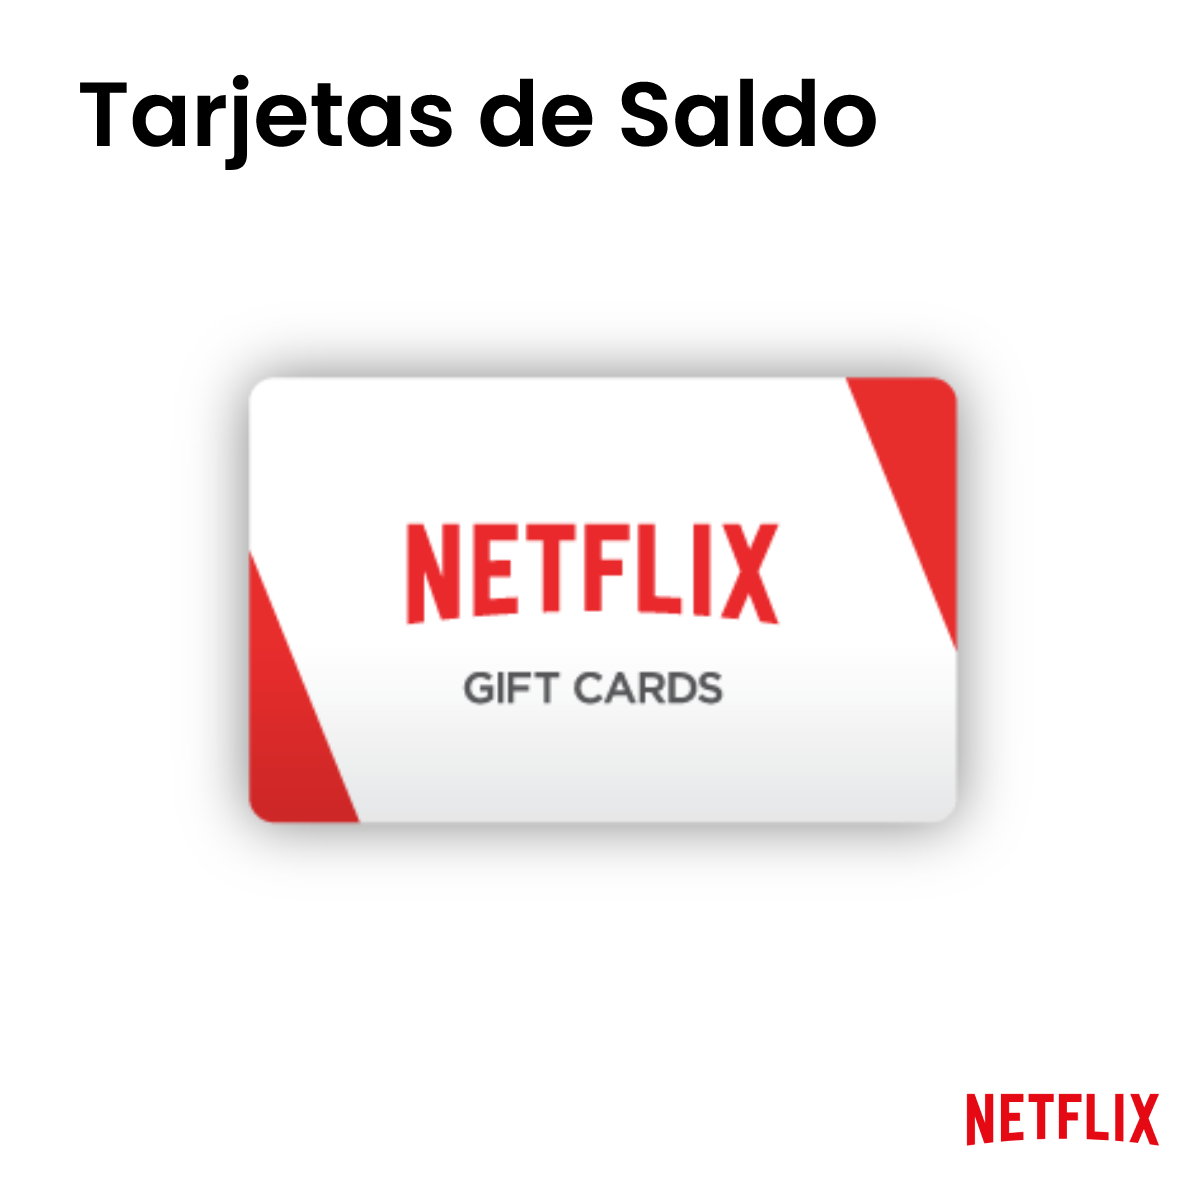 Tarjetas Saldo - Netflix